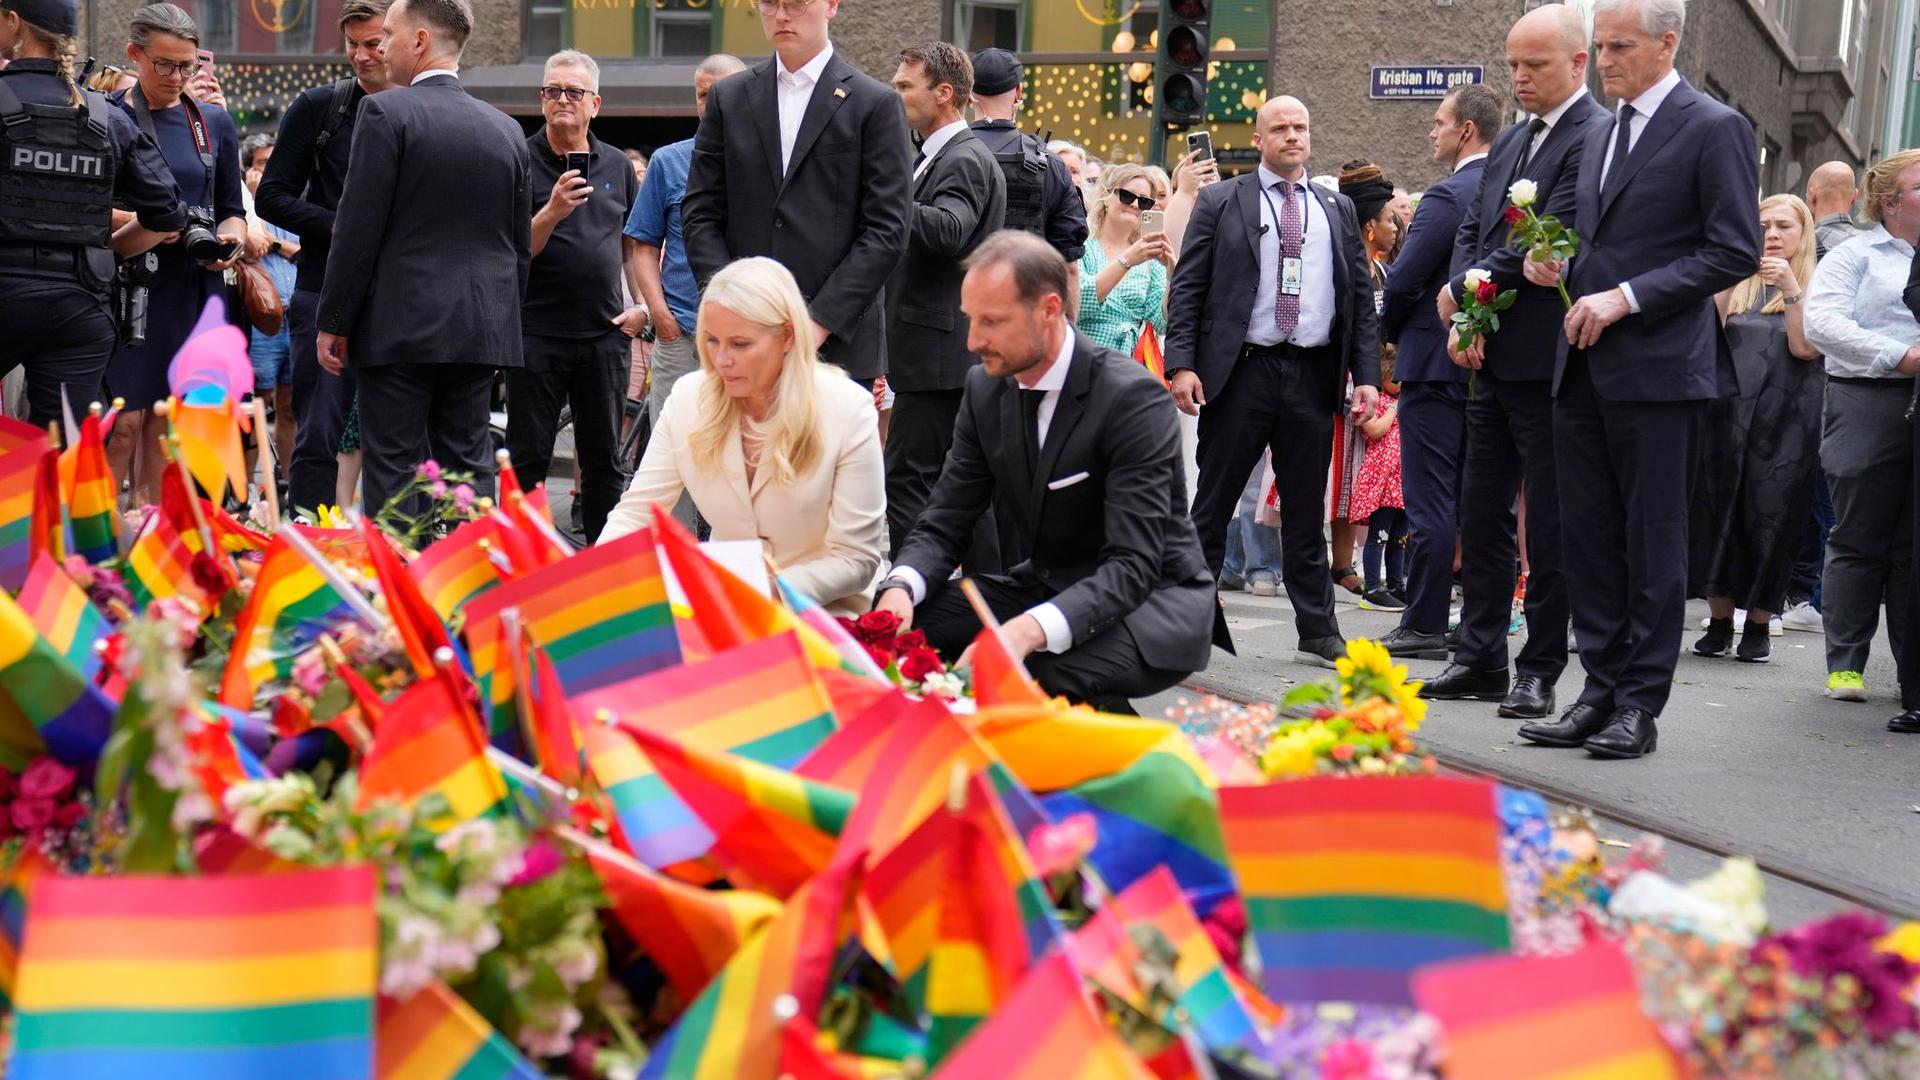 Kronprinz Haakon von Norwegen (M, r), Kronprinzessin Mette-Marit von Norwegen (M, l) und Jonas Gahr Støre (r), Regierungschef von Norwegen, legen Blumen am Tatort nieder.